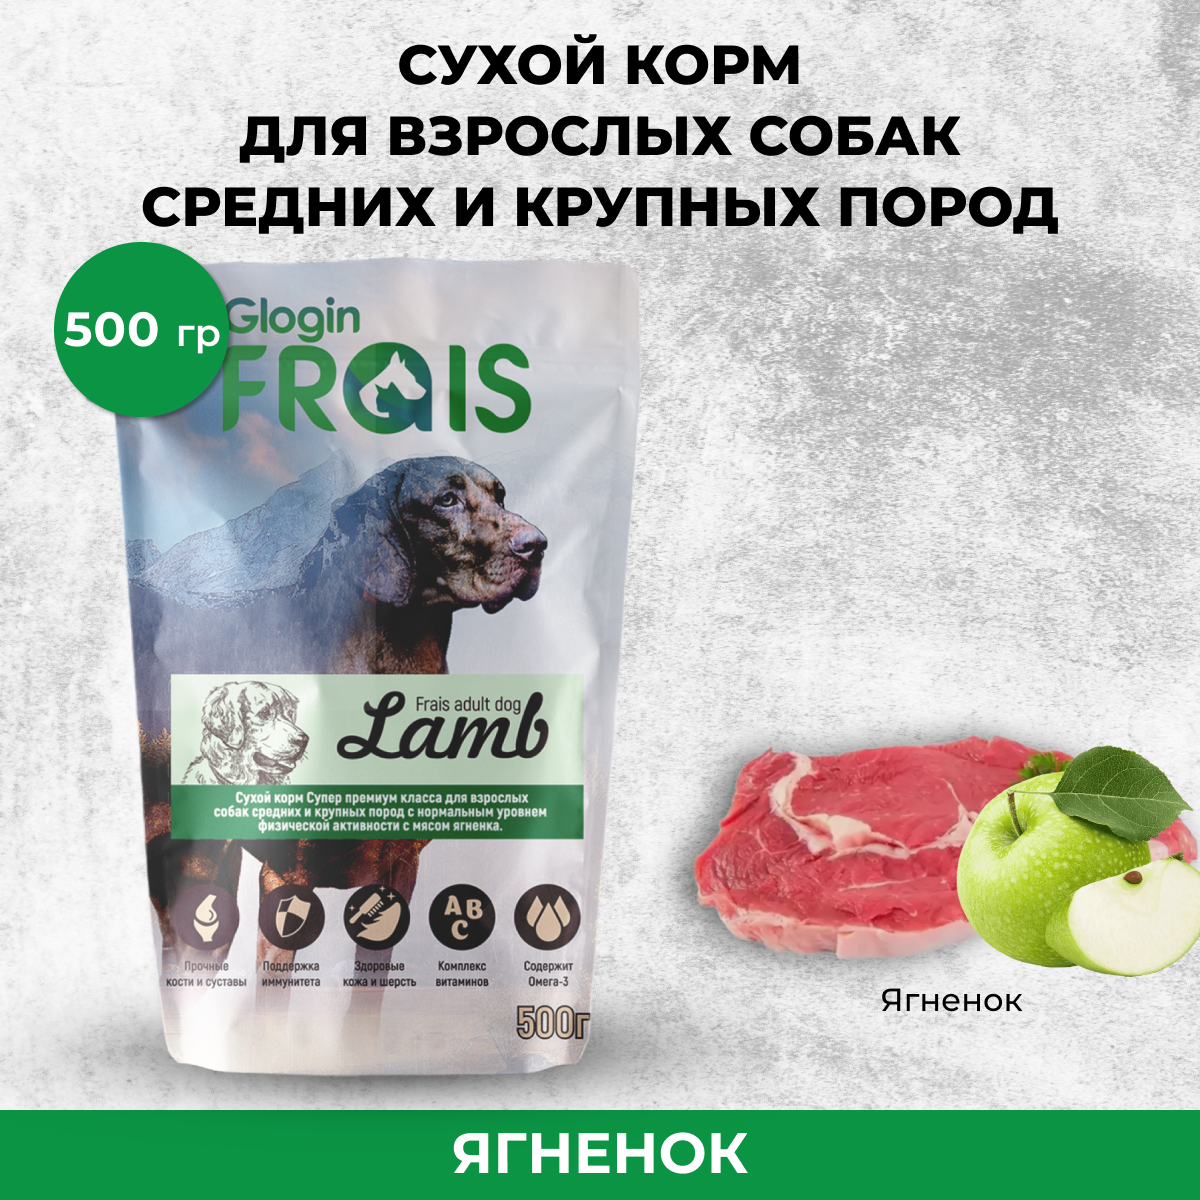 Сухой корм для собак FRAIS ADULT DOG LAMB для средних и крупных пород, ягненок, 0,5 кг